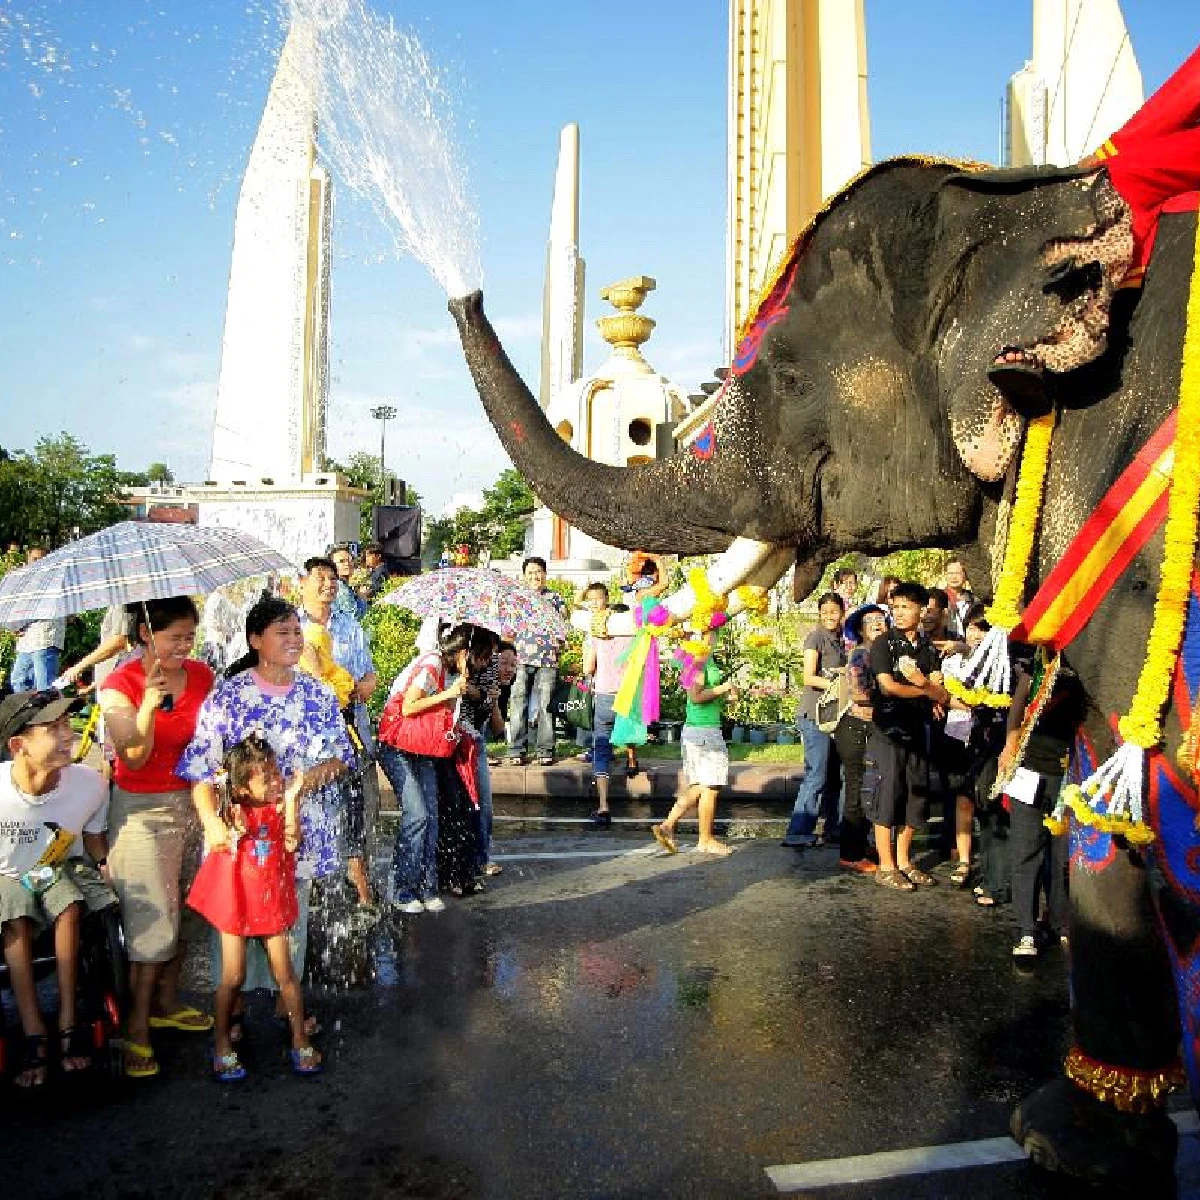 I migliori festival primaverili del mondo Songkran Festival - Tailandia